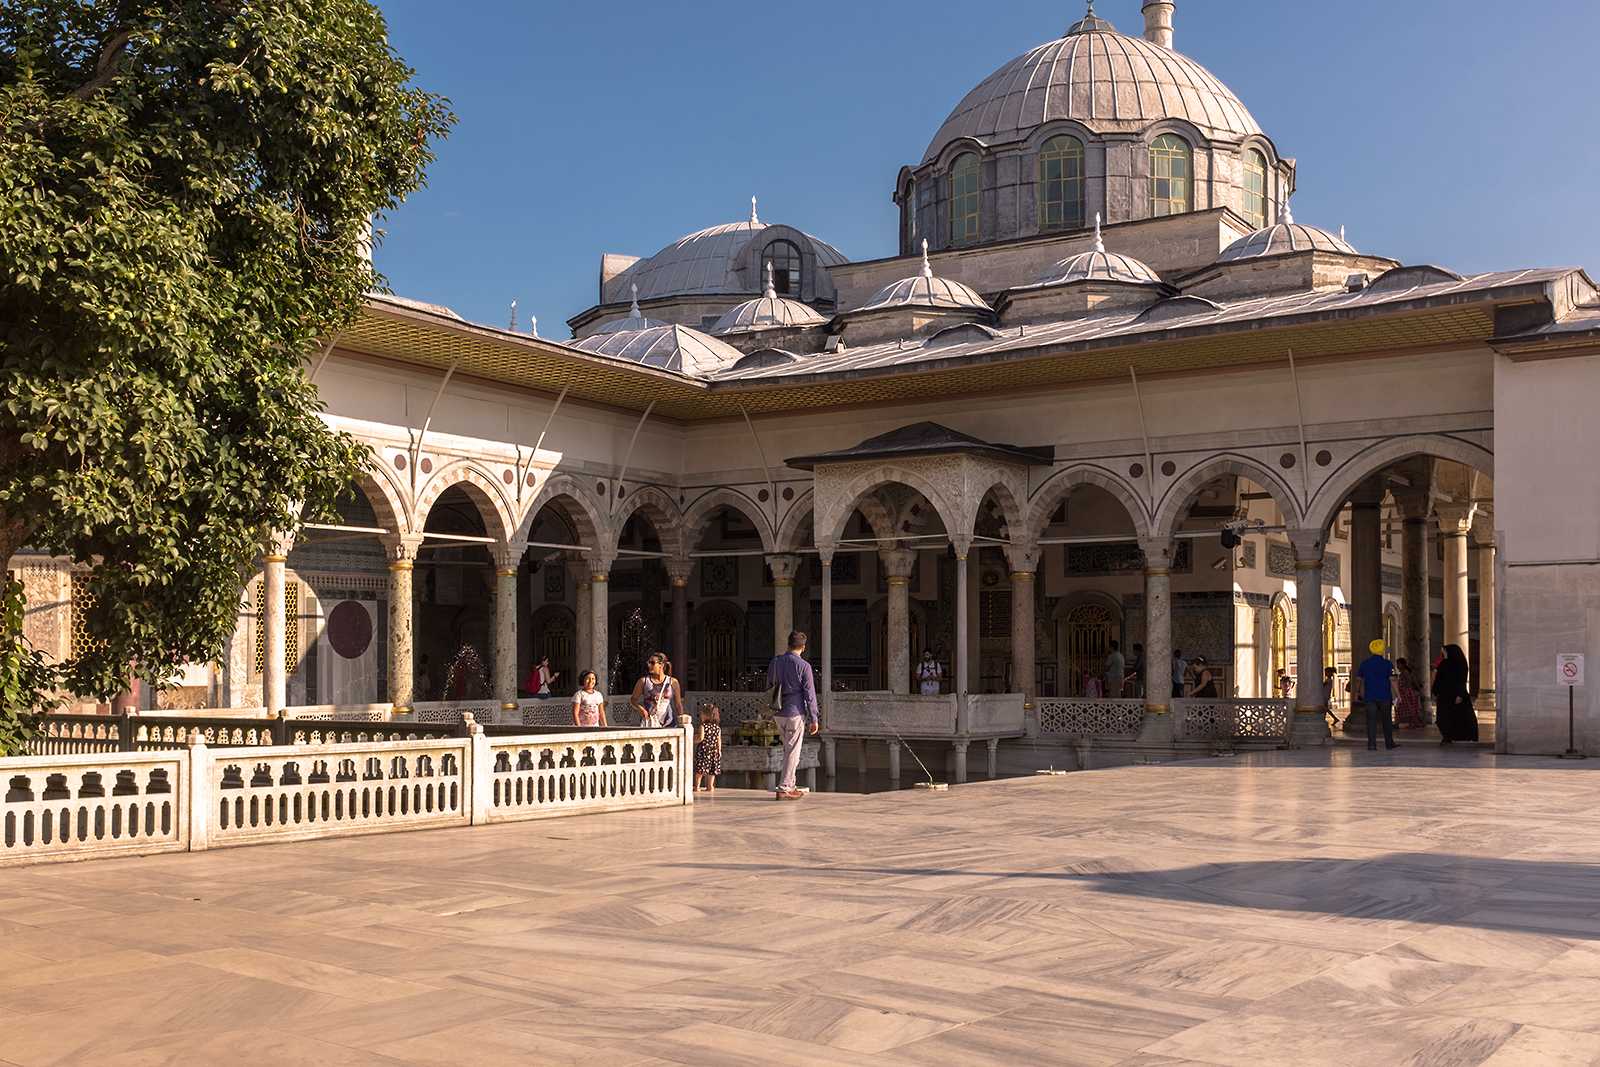 Топкапы: описание и обзор османского дворца и музея в стамбуле